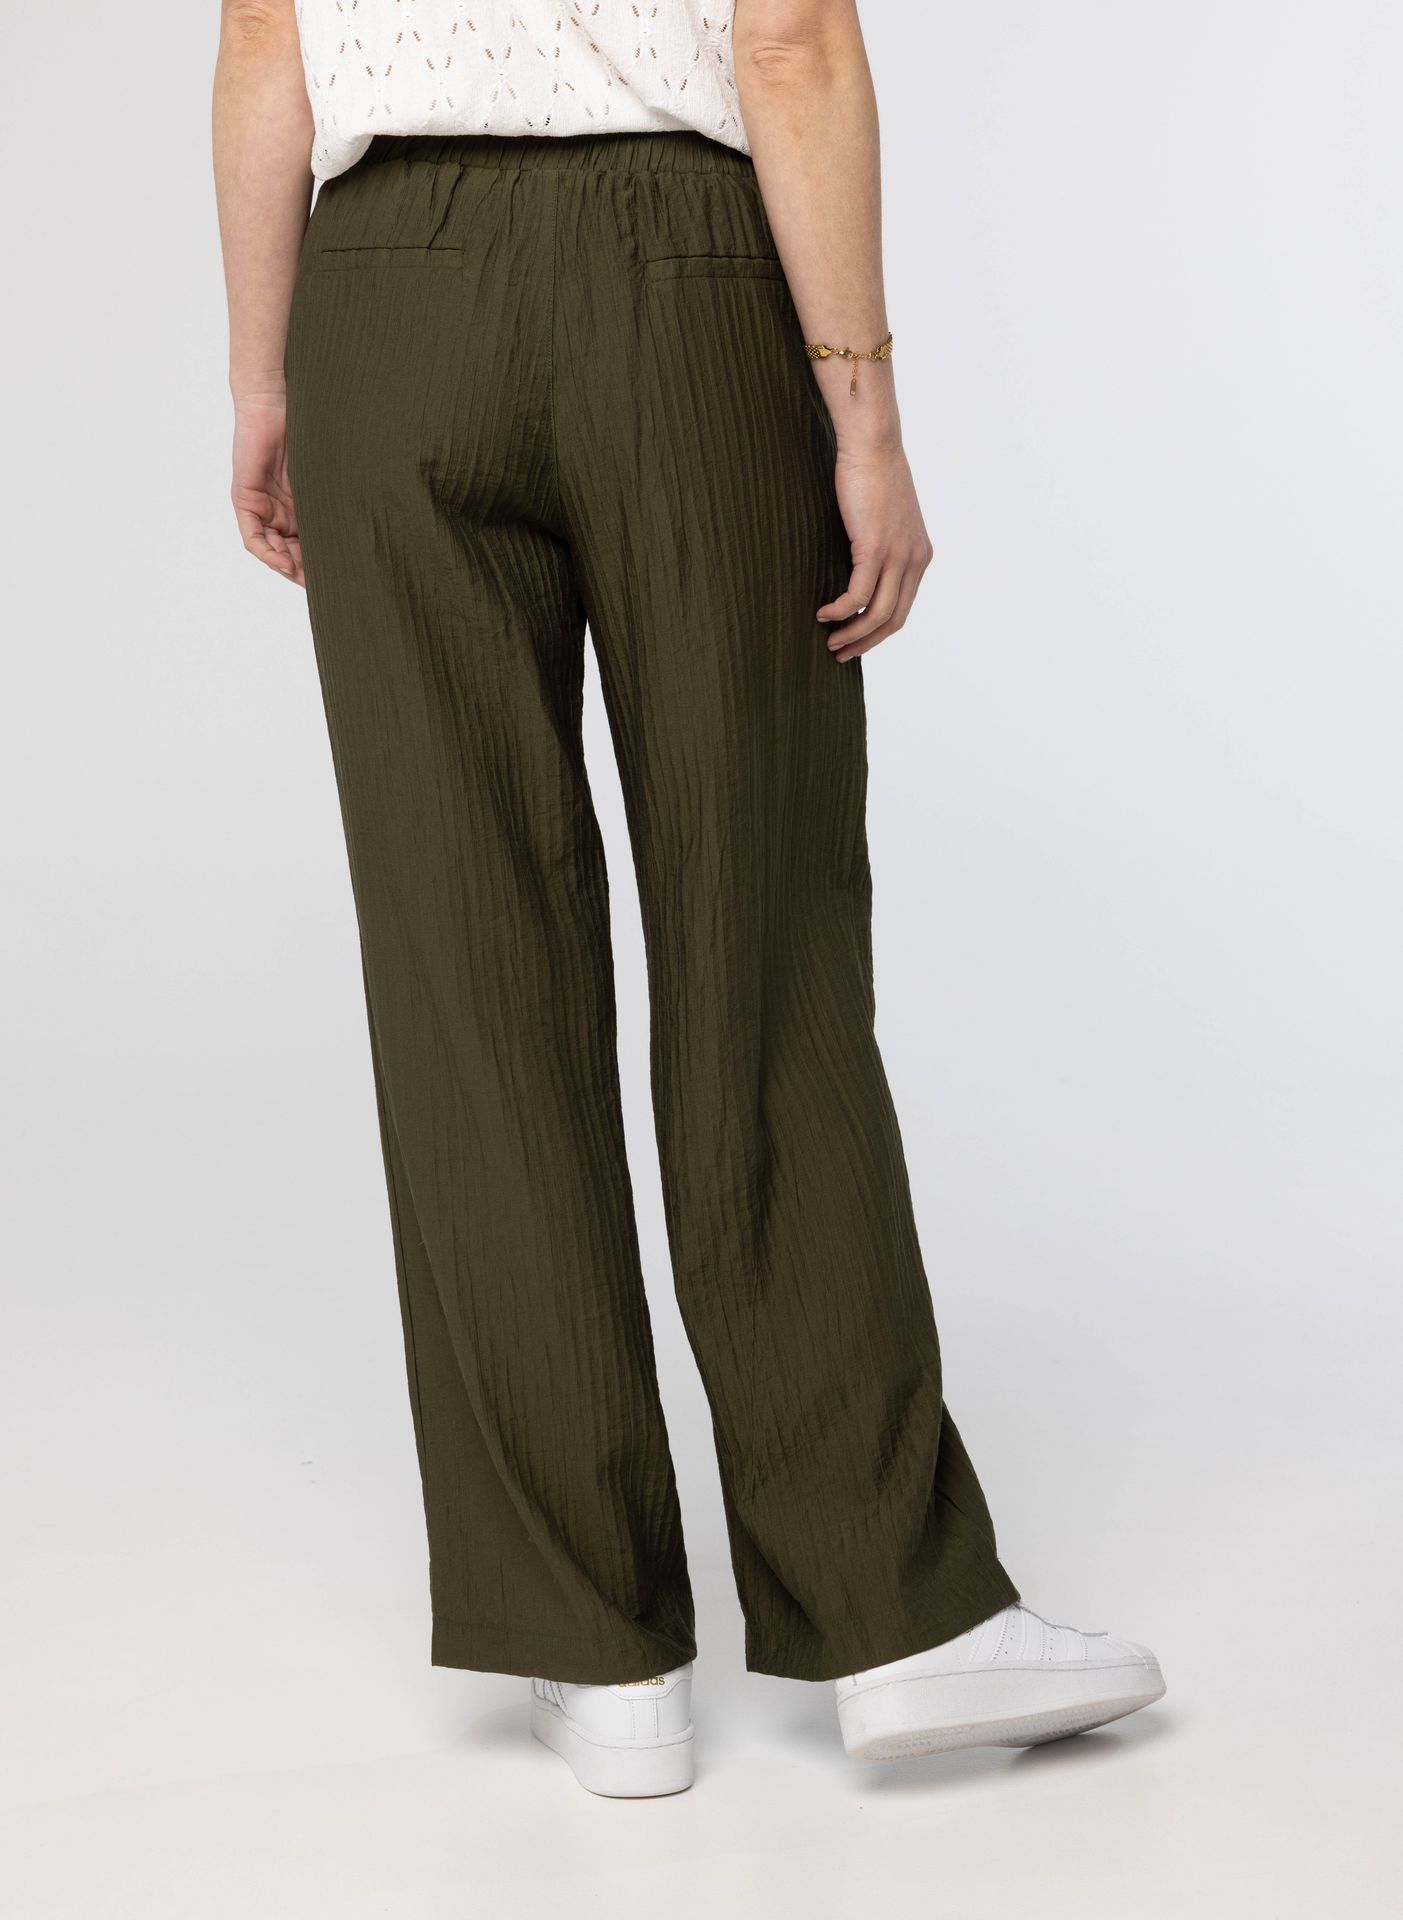 Norah Legergroene pantalon dark olive 213535-598